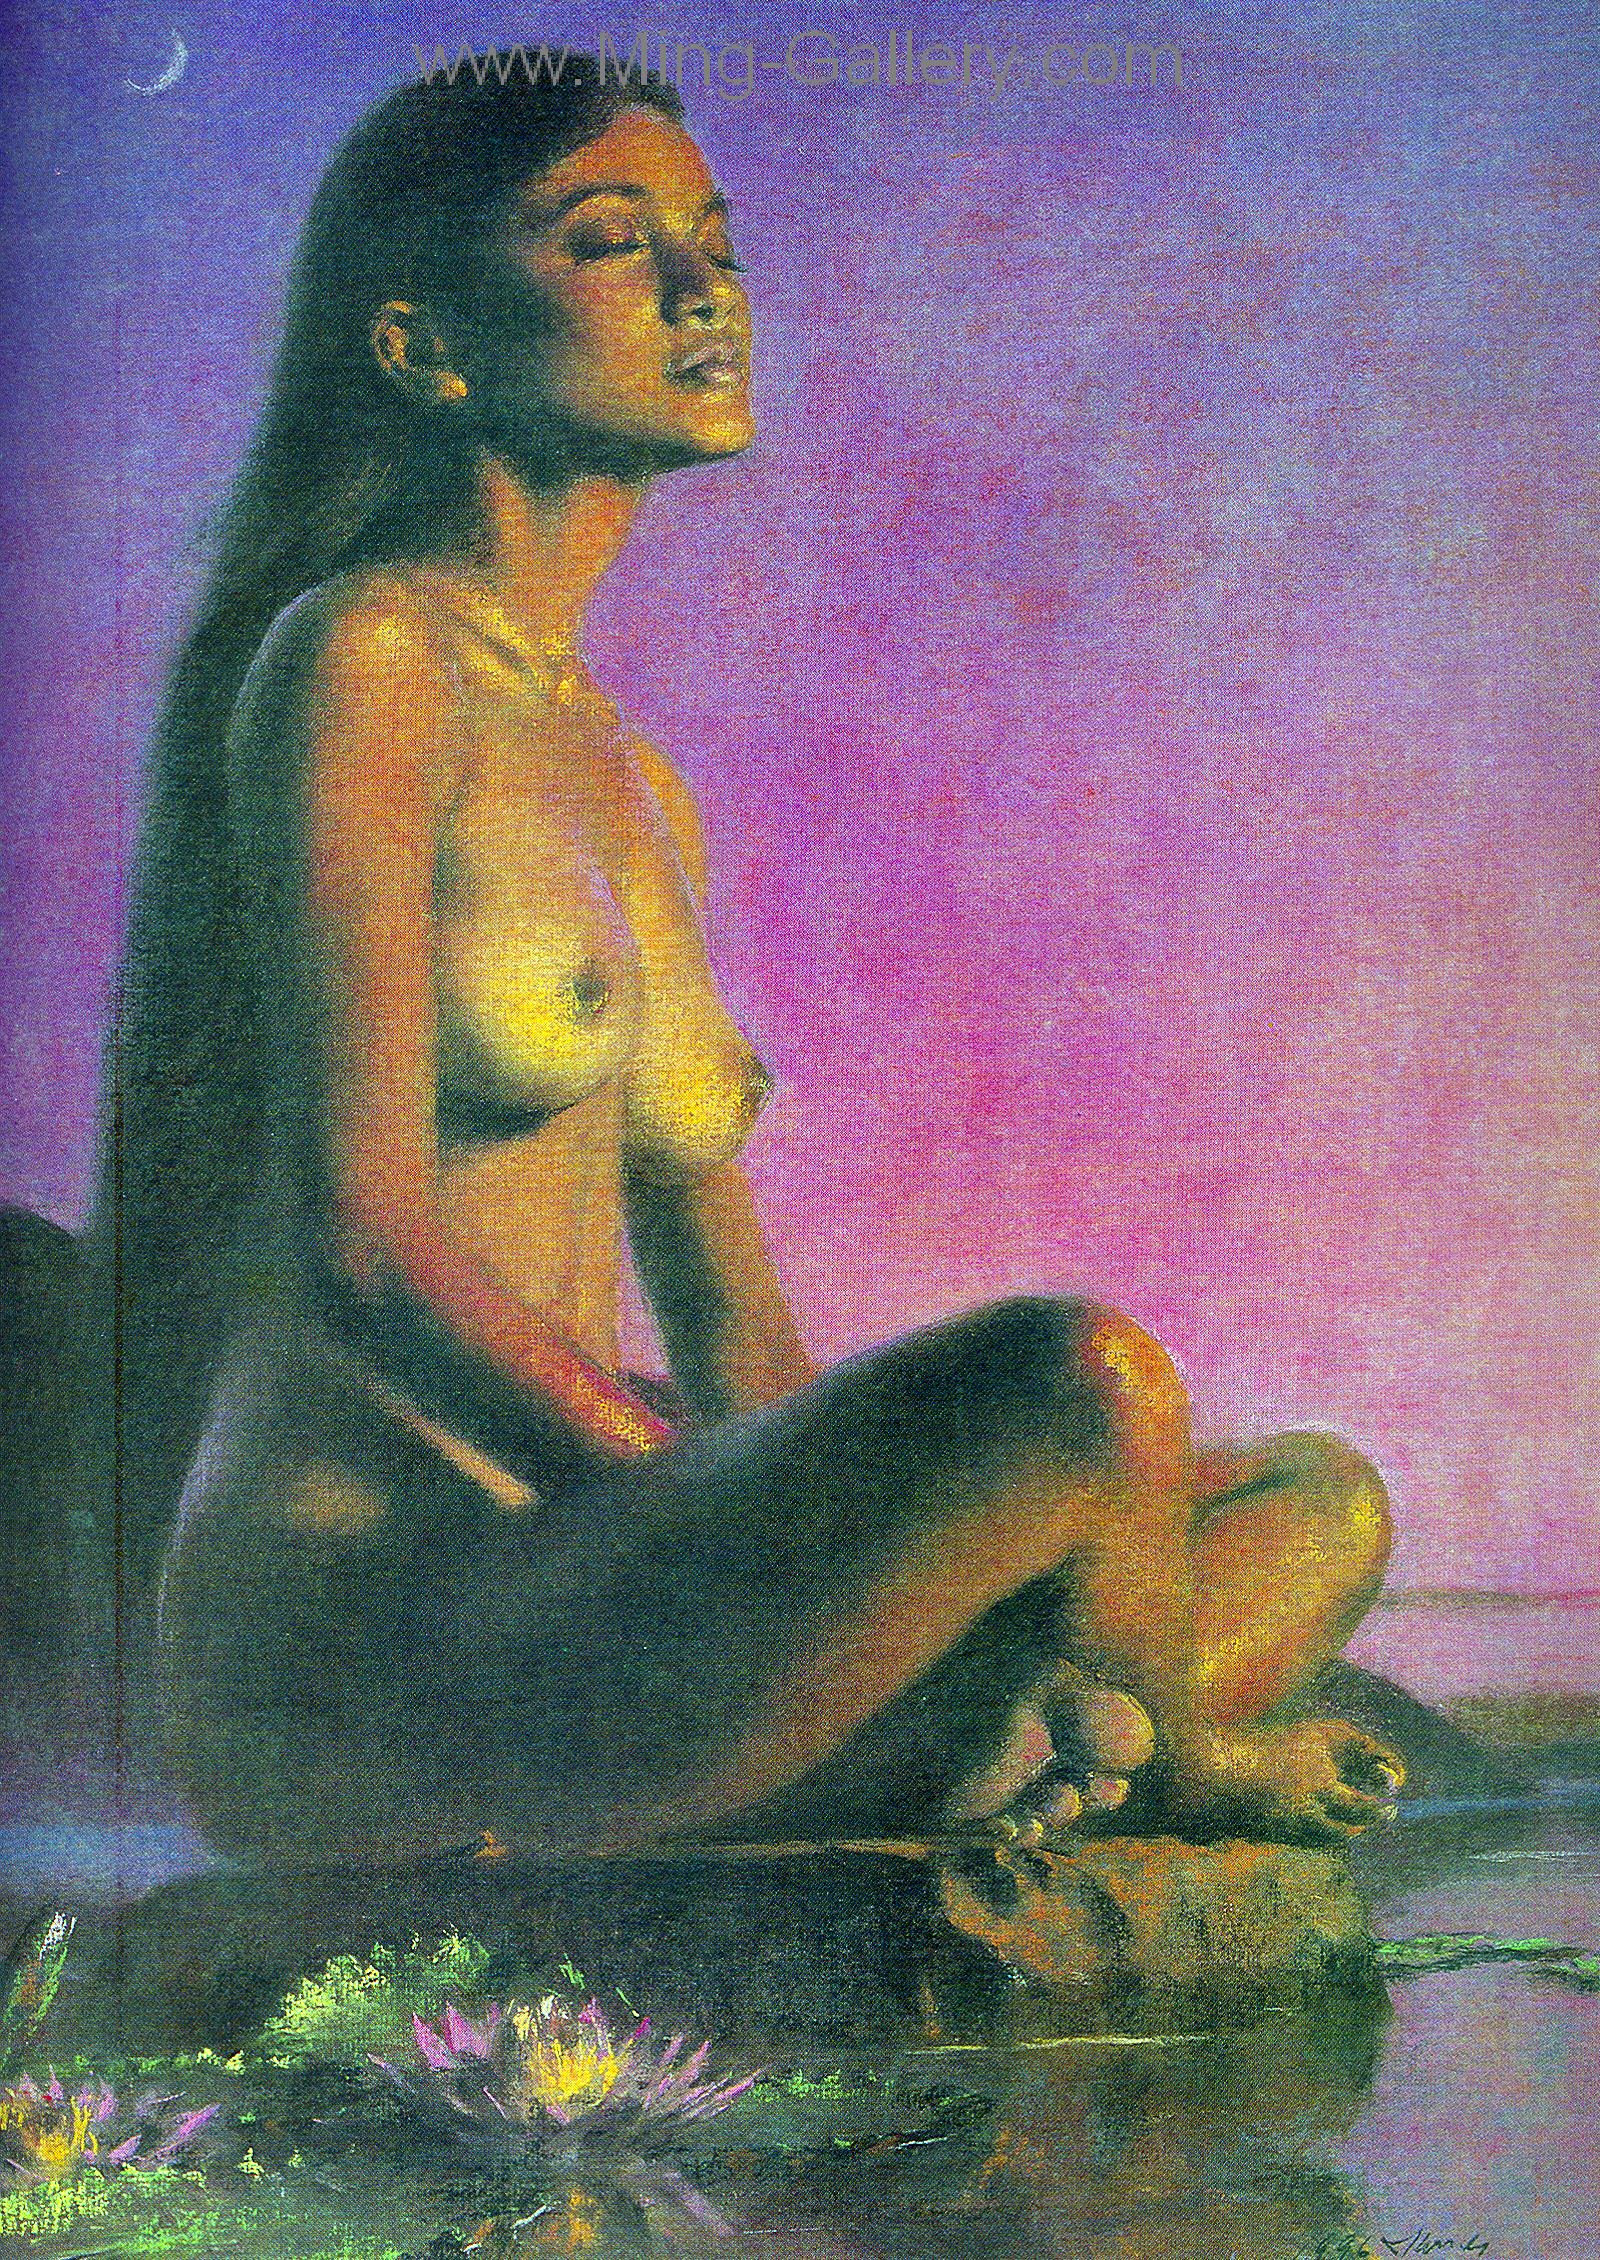 BAN0003 - Bali Nude Painting